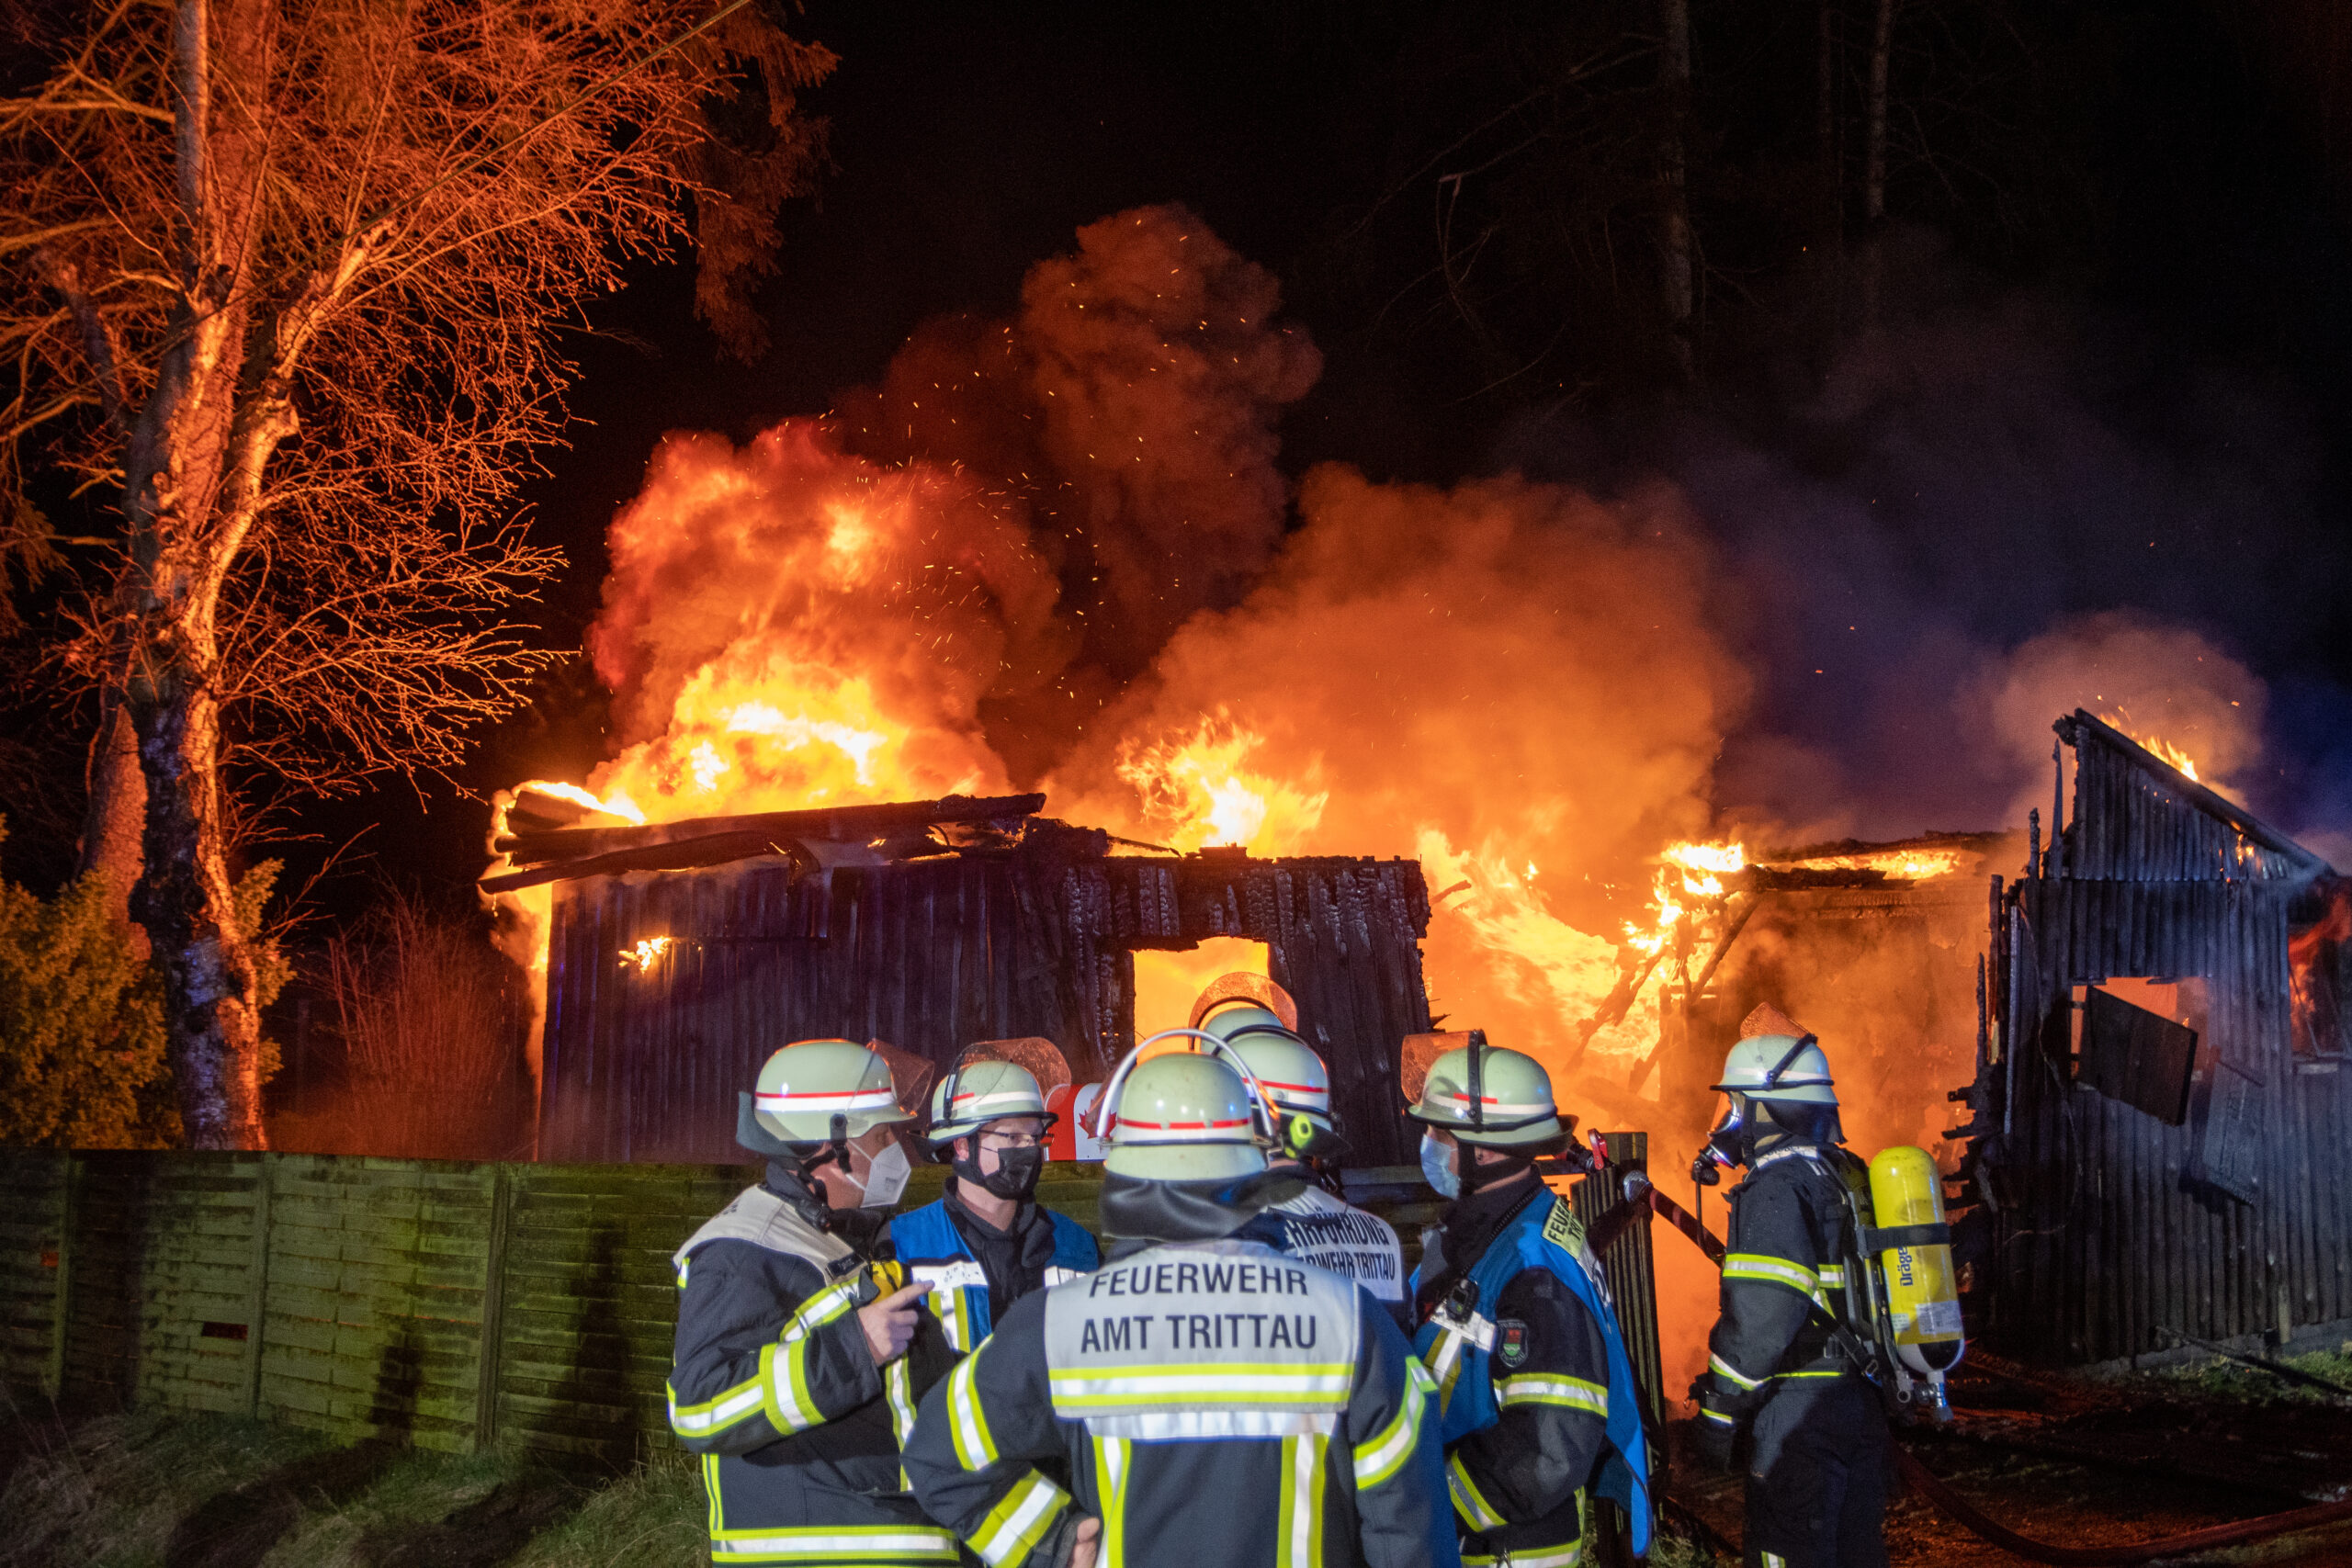 Feuerwehrkräfte vor dem brennenden Ferienhaus in Trittau.